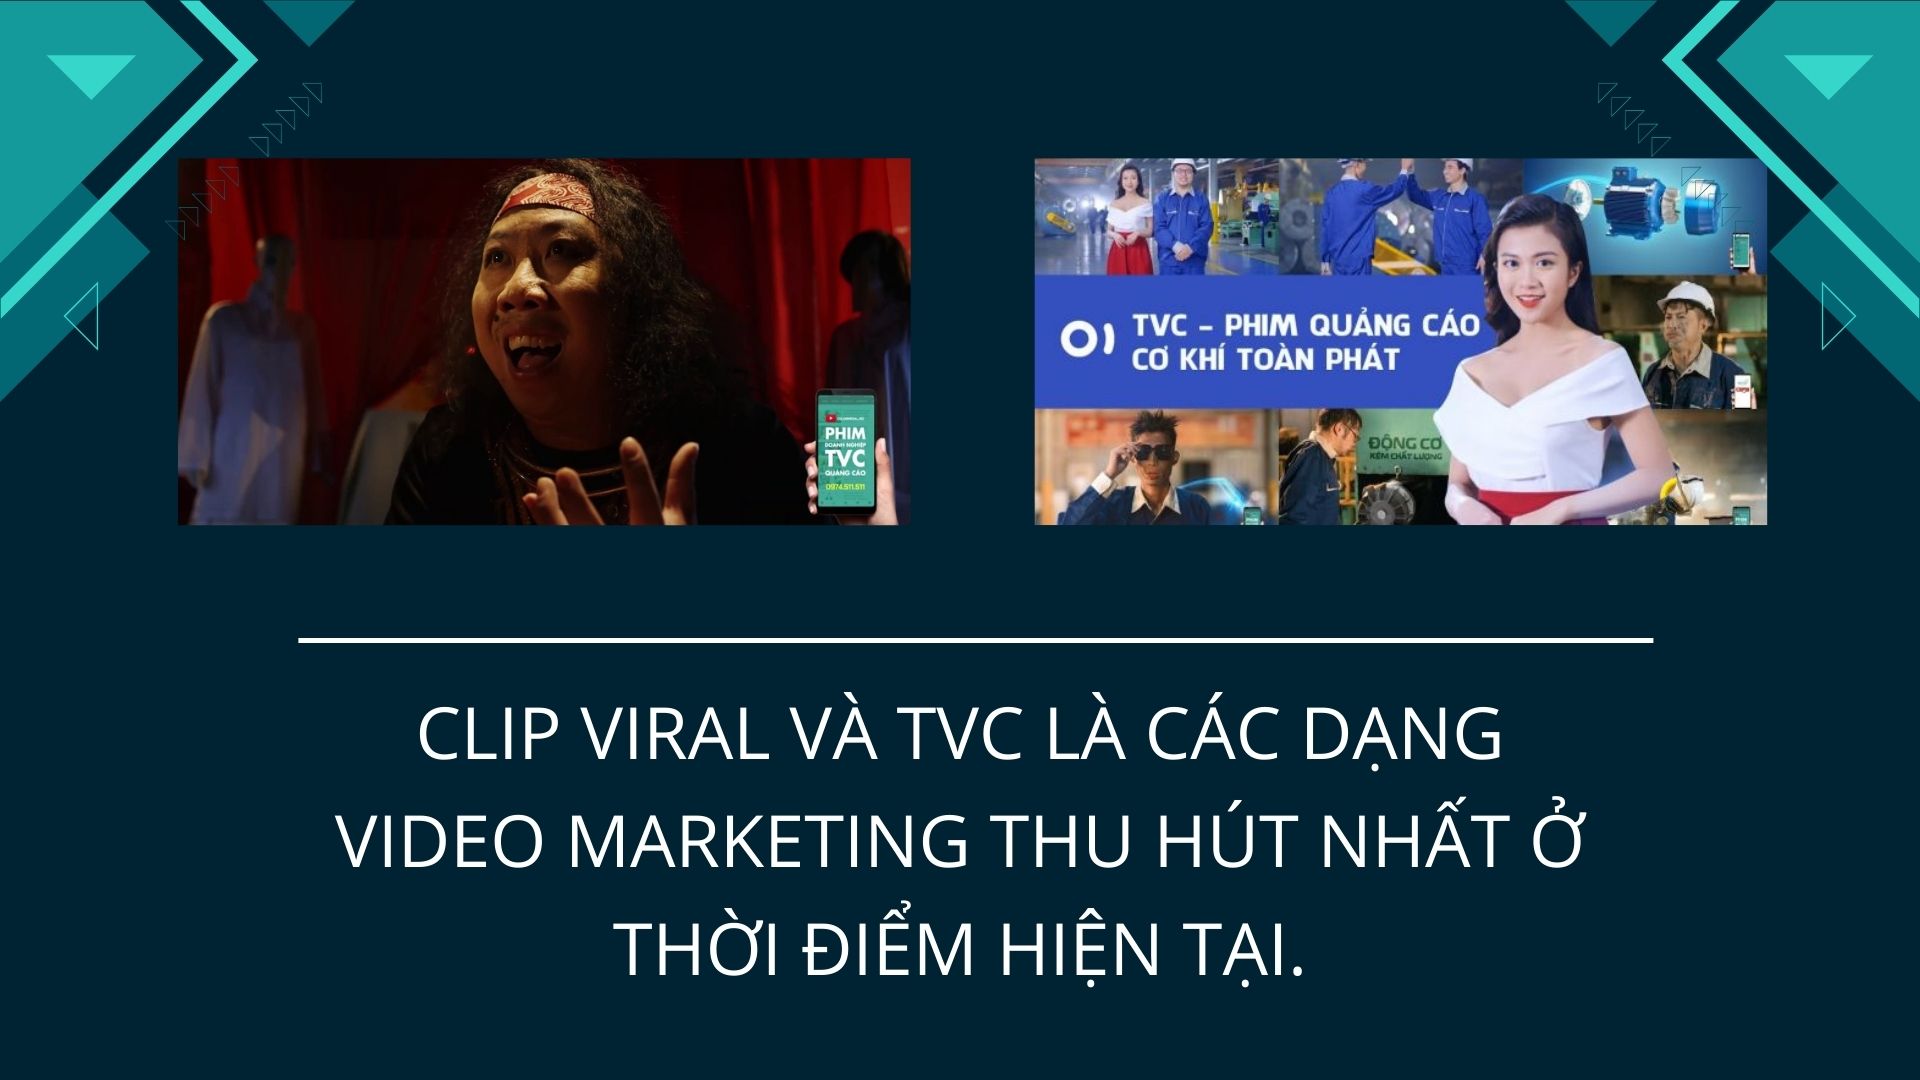 Marketer cần làm gì để người xem không skip ad video marketing?